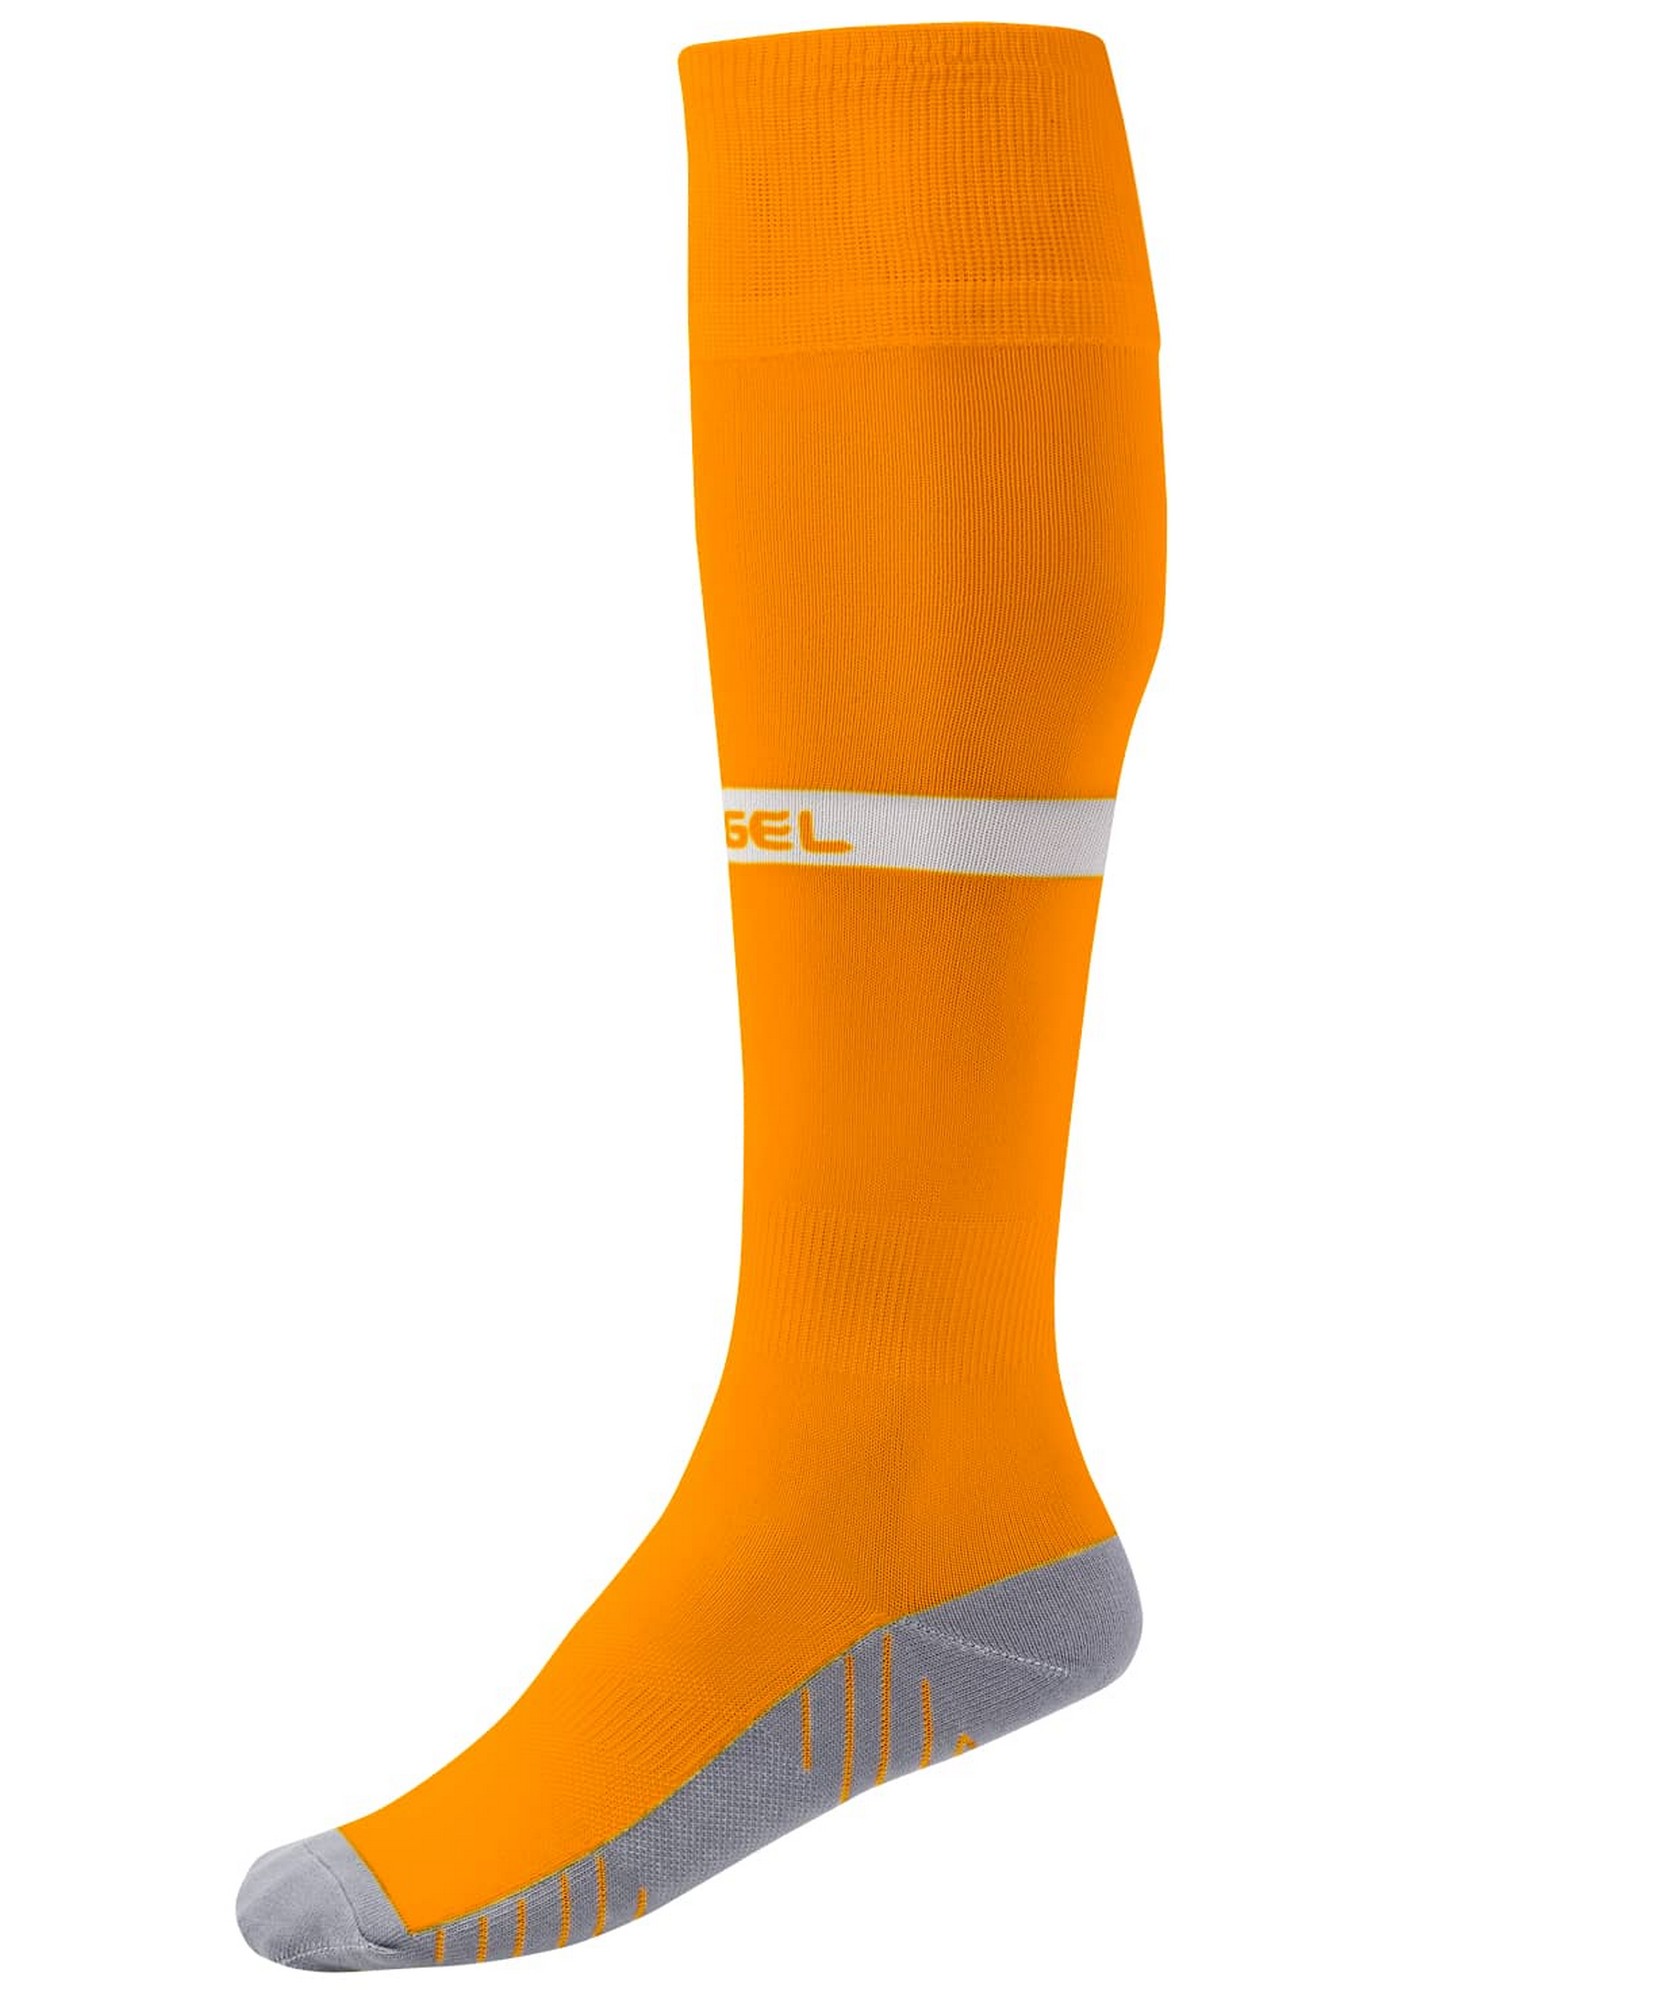 Купить Гетры футбольные Jögel Camp Advanced Socks оранжевыйбелый,